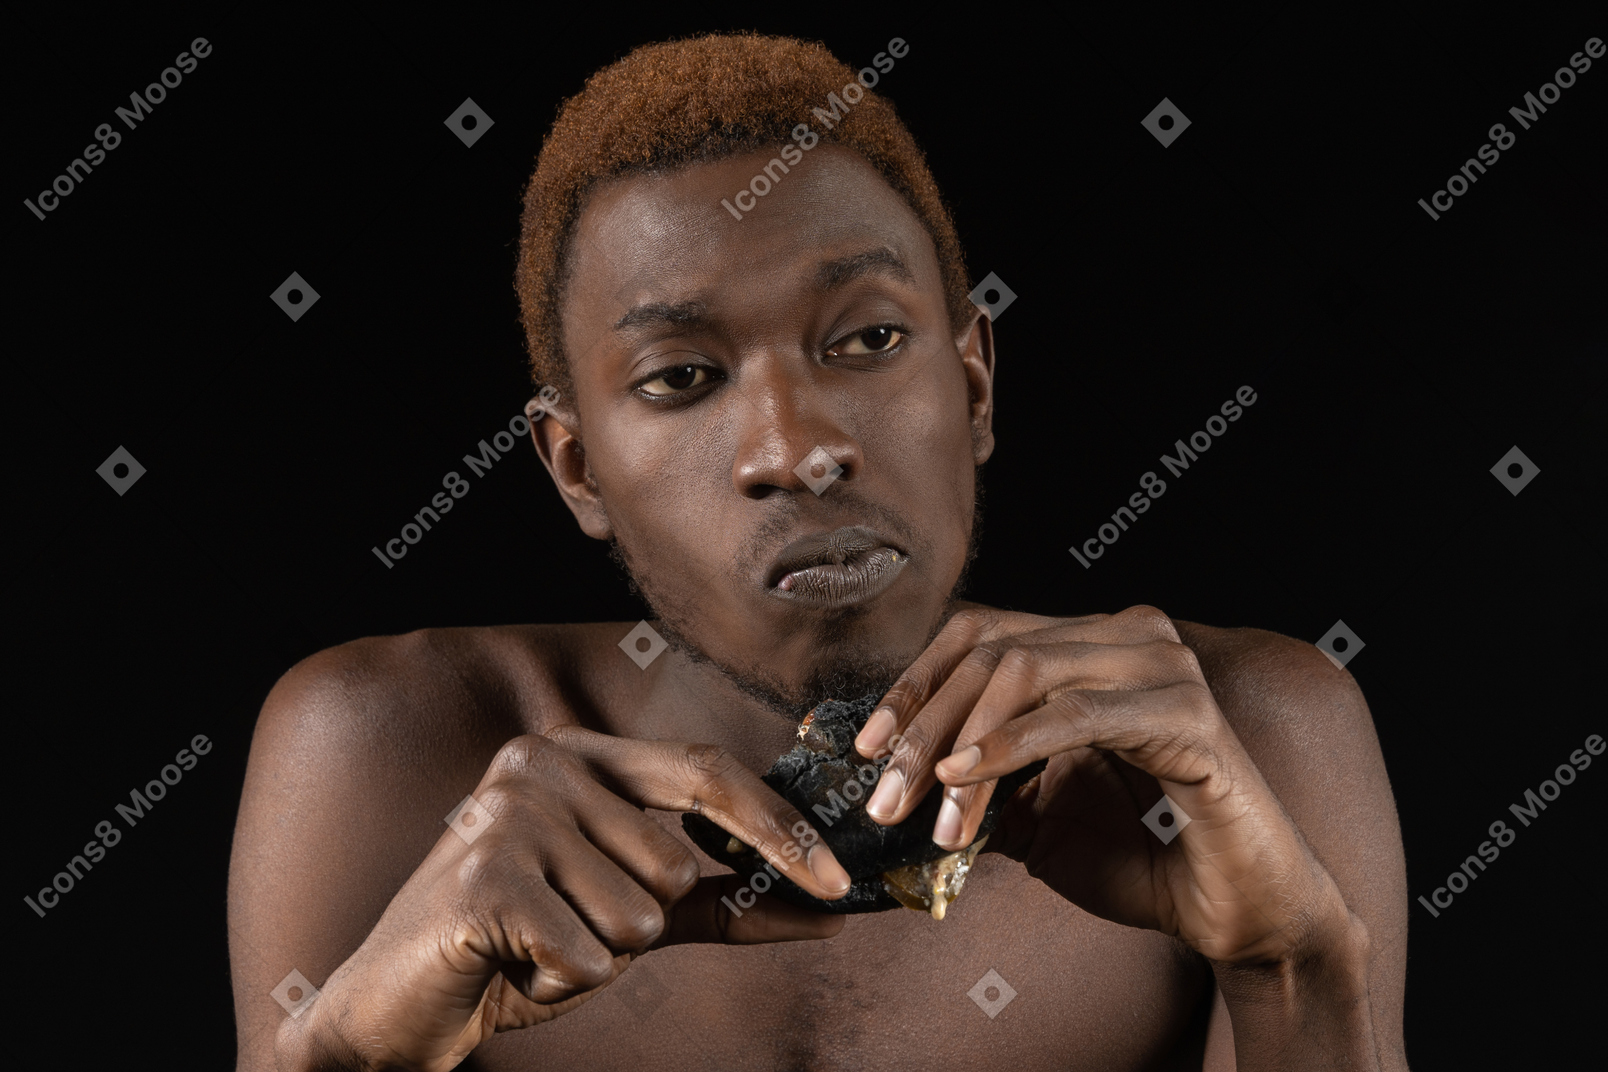 Vue de face d'un jeune homme afro réfléchi mangeant un hamburger